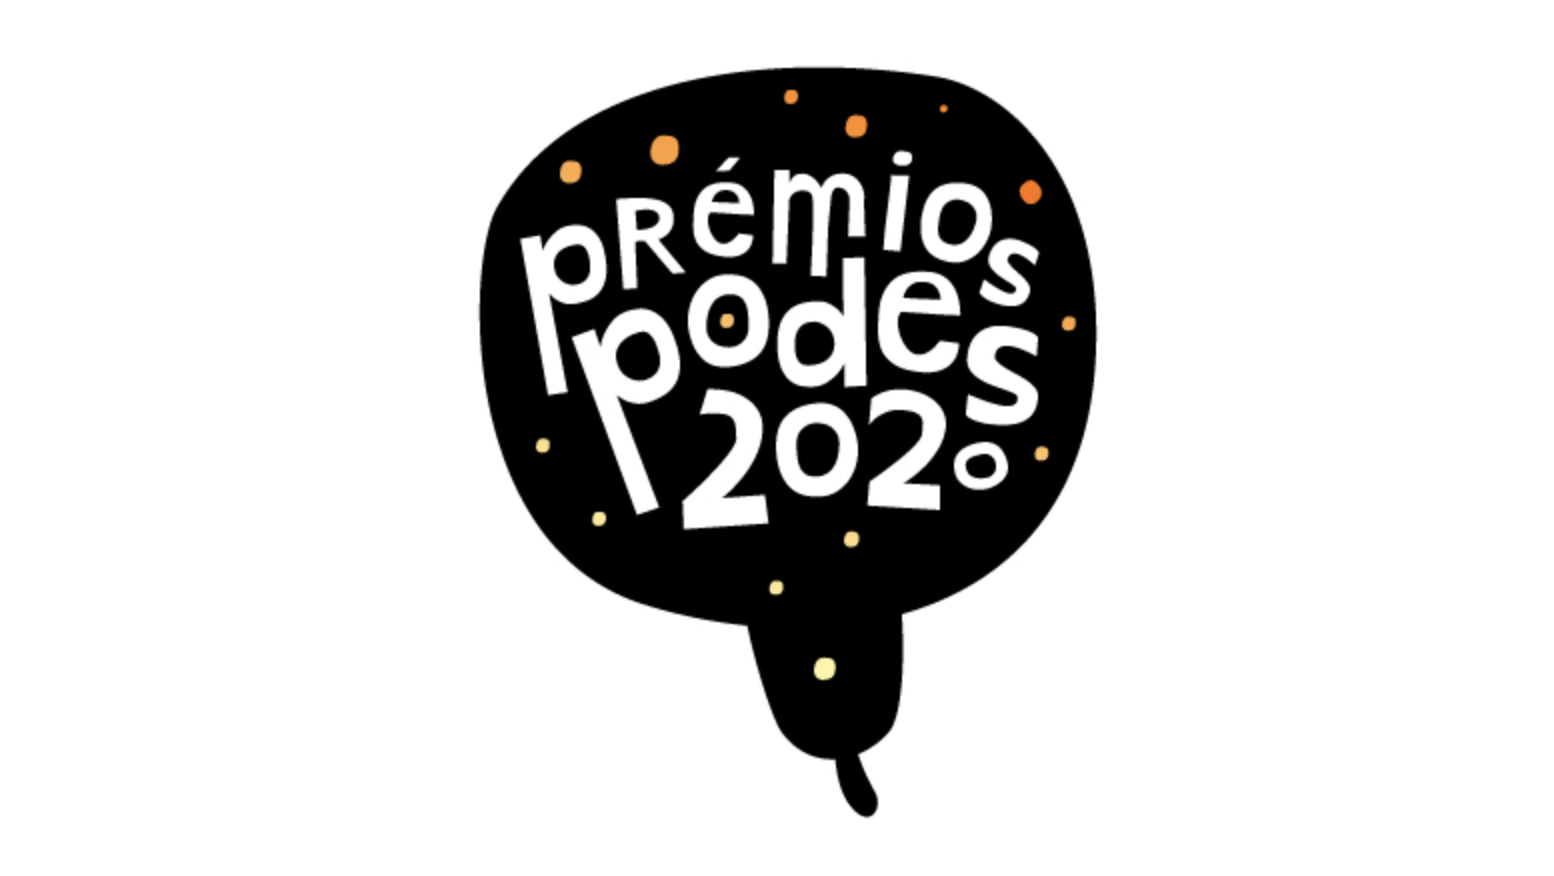 O Podes 2023, que celebra os Podcasts em Portugal, realizam-se este sábado  - Epopculture News